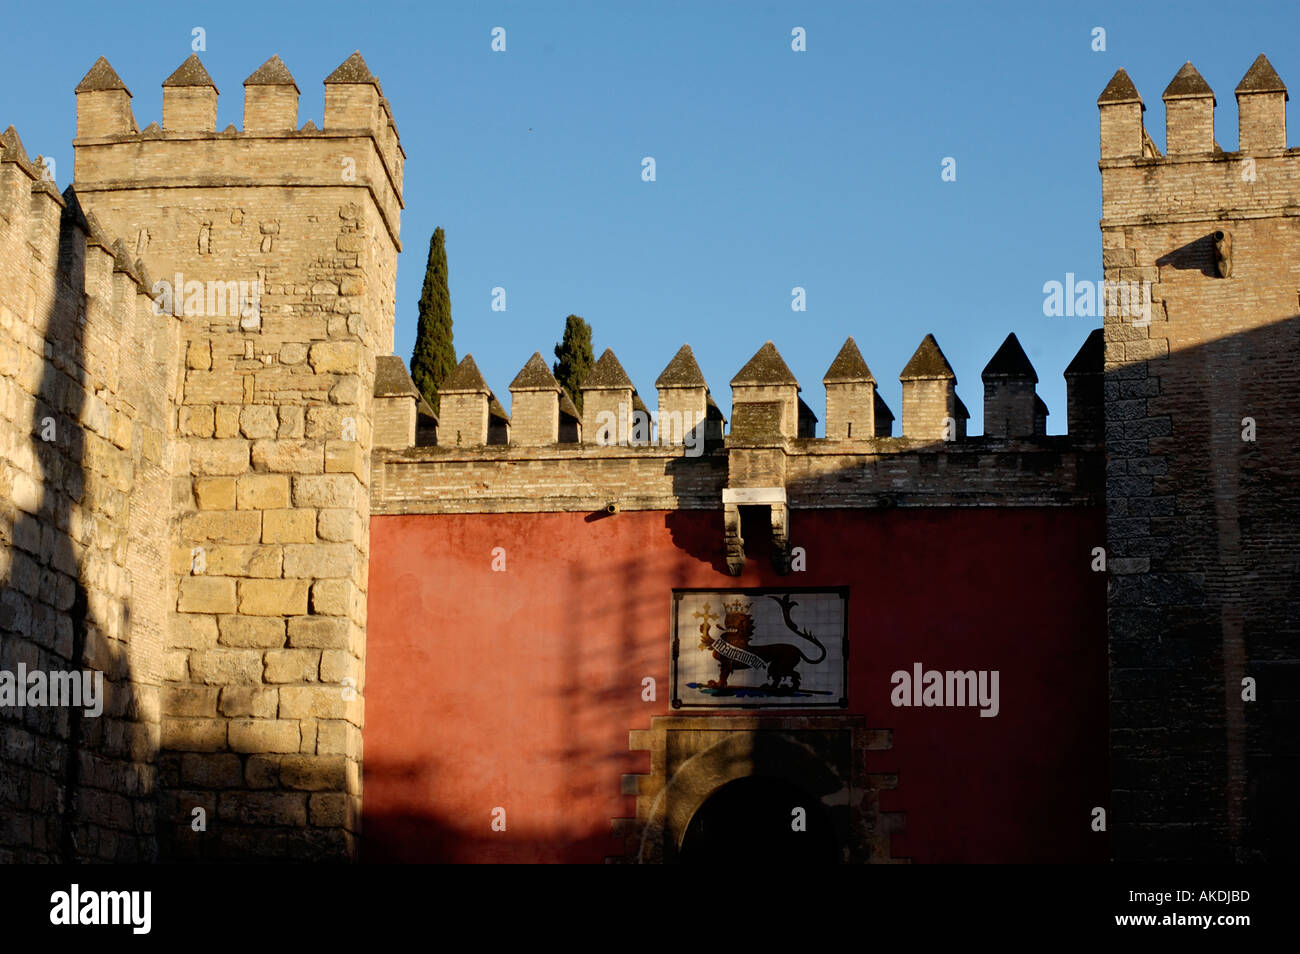 España andalucía Sevilla Puerta del León el Alcázar de la puerta de entrada principal de León Foto de stock